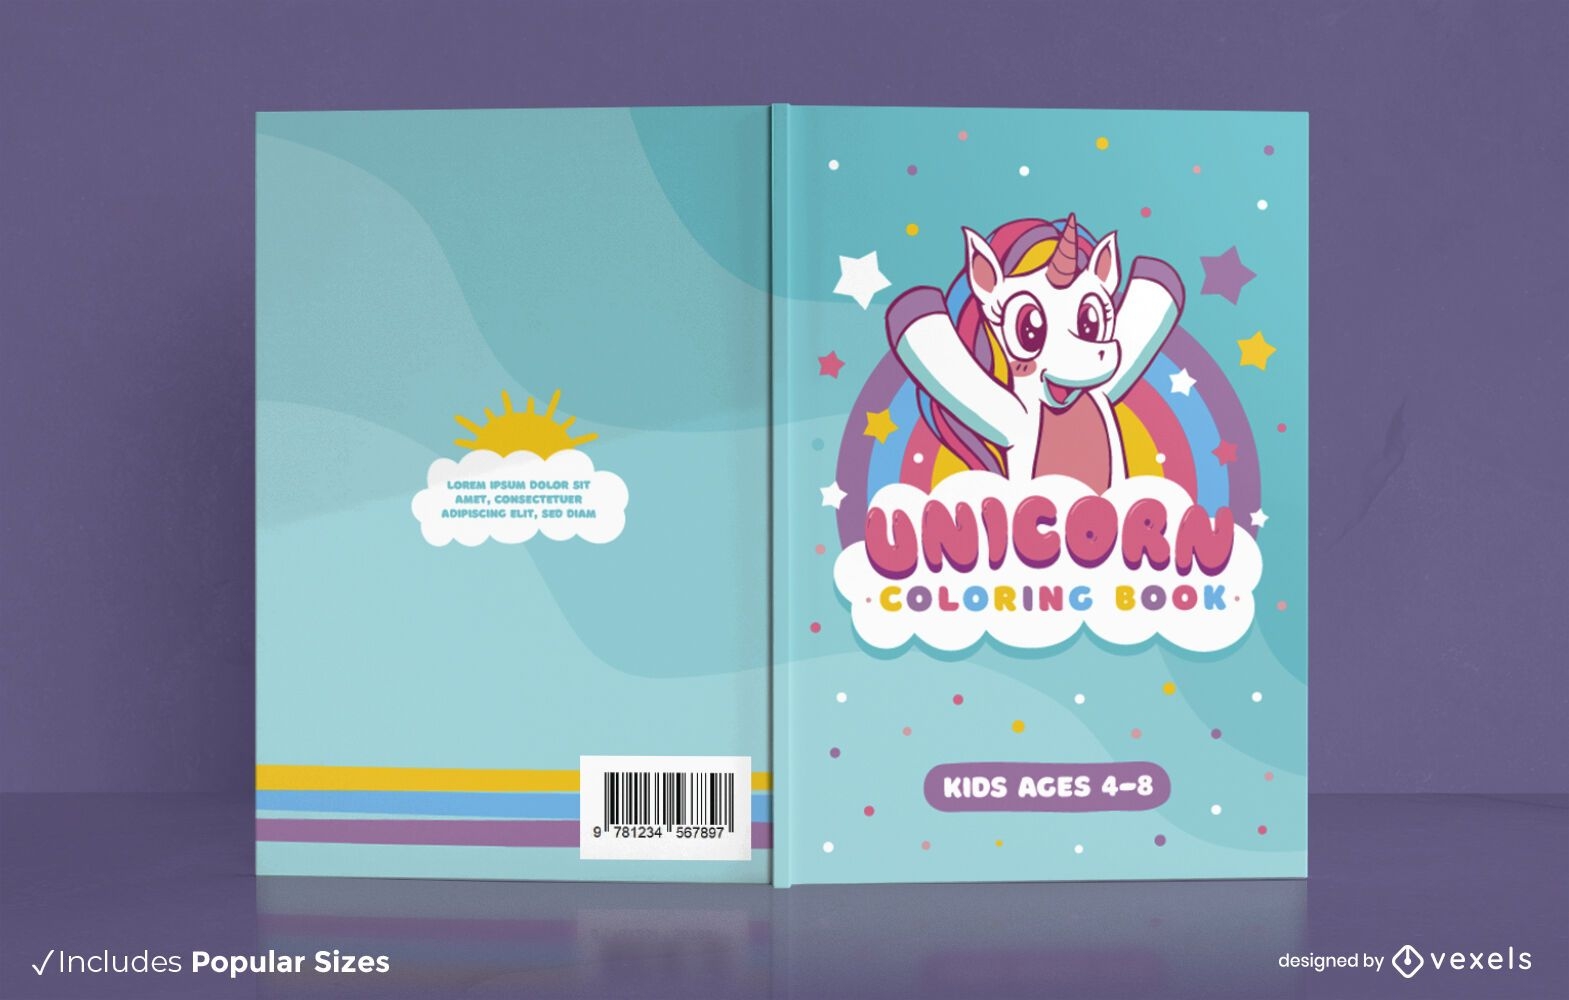 Unicorn children coloring book cover design